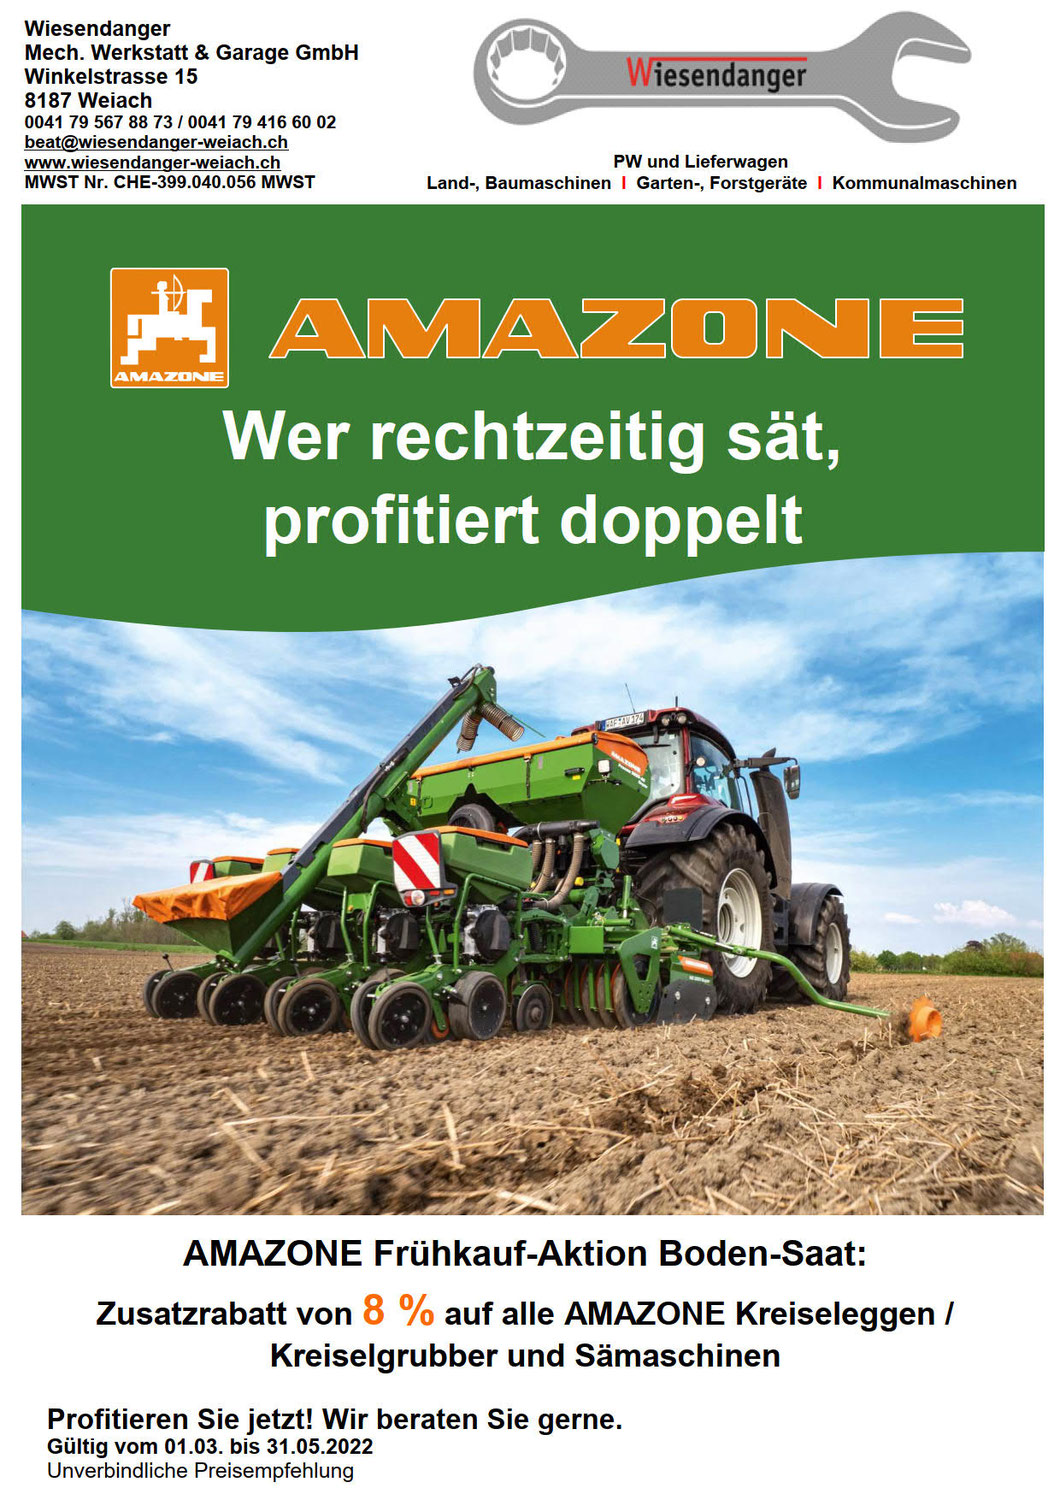 Amazone Frühkauf-Aktion Boden-Saat